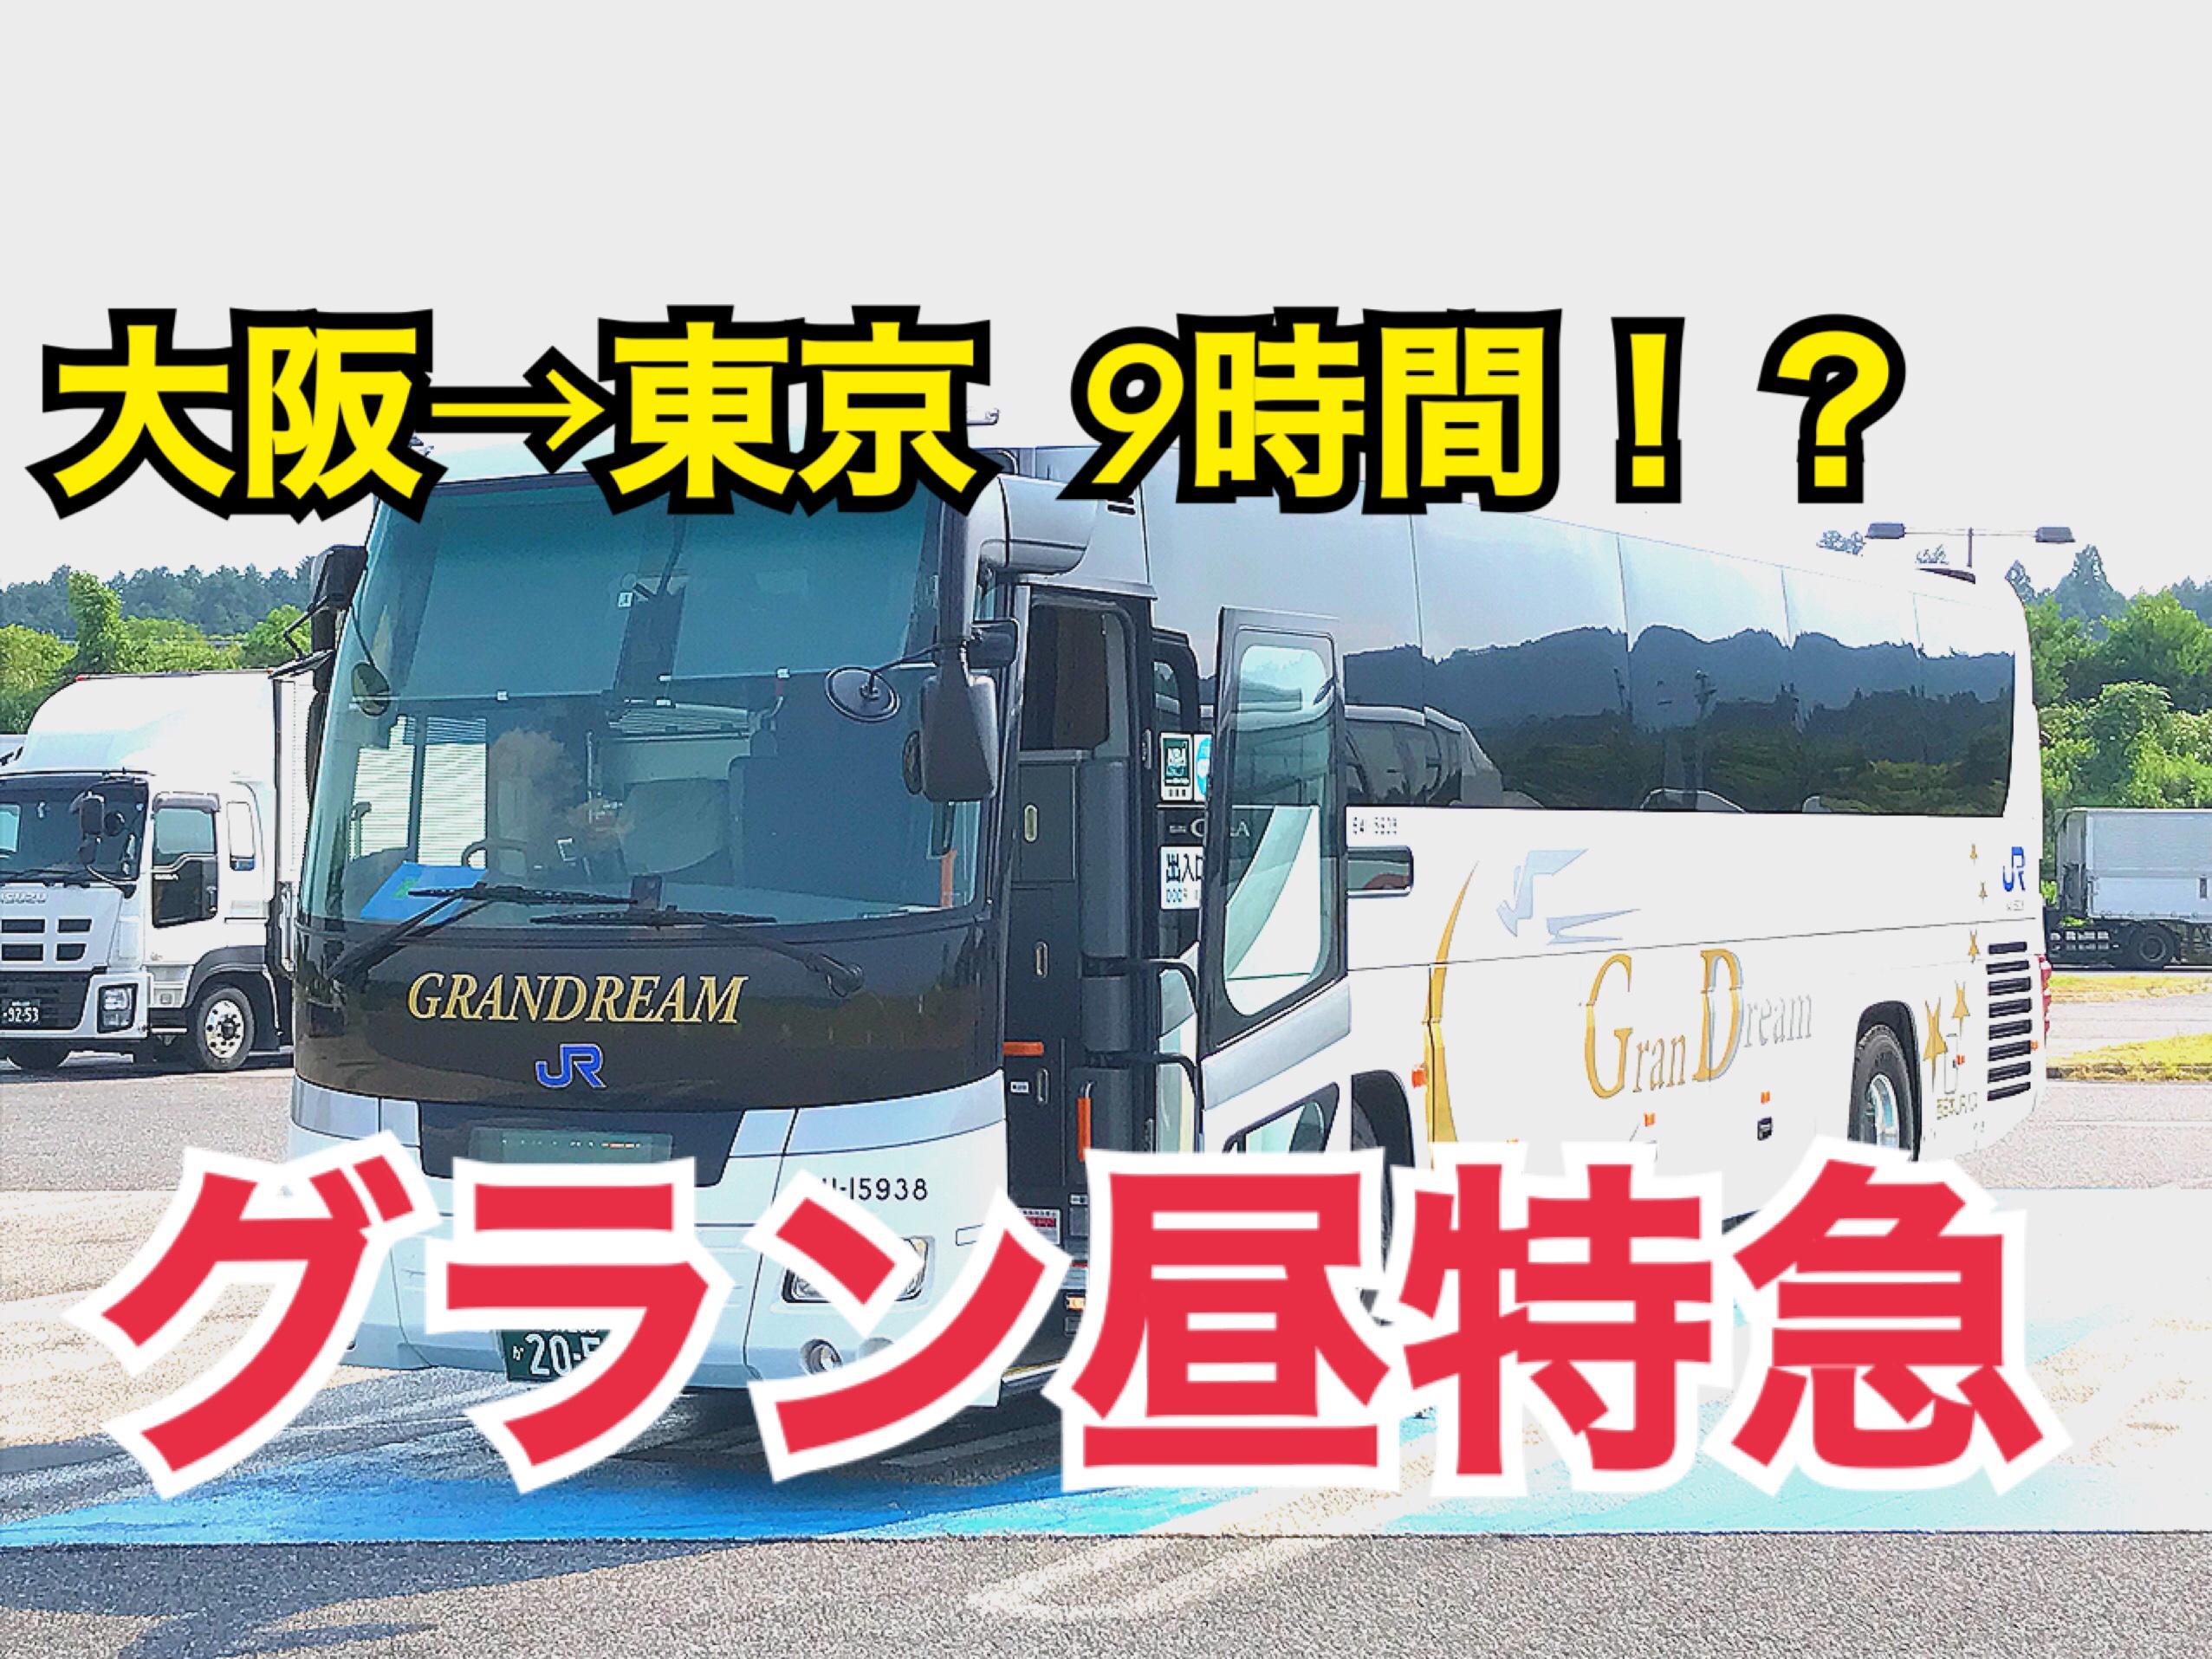 9時間でも楽しい！グラン昼特急で大阪から東京へバス移動してみた！【関西勉強合宿】